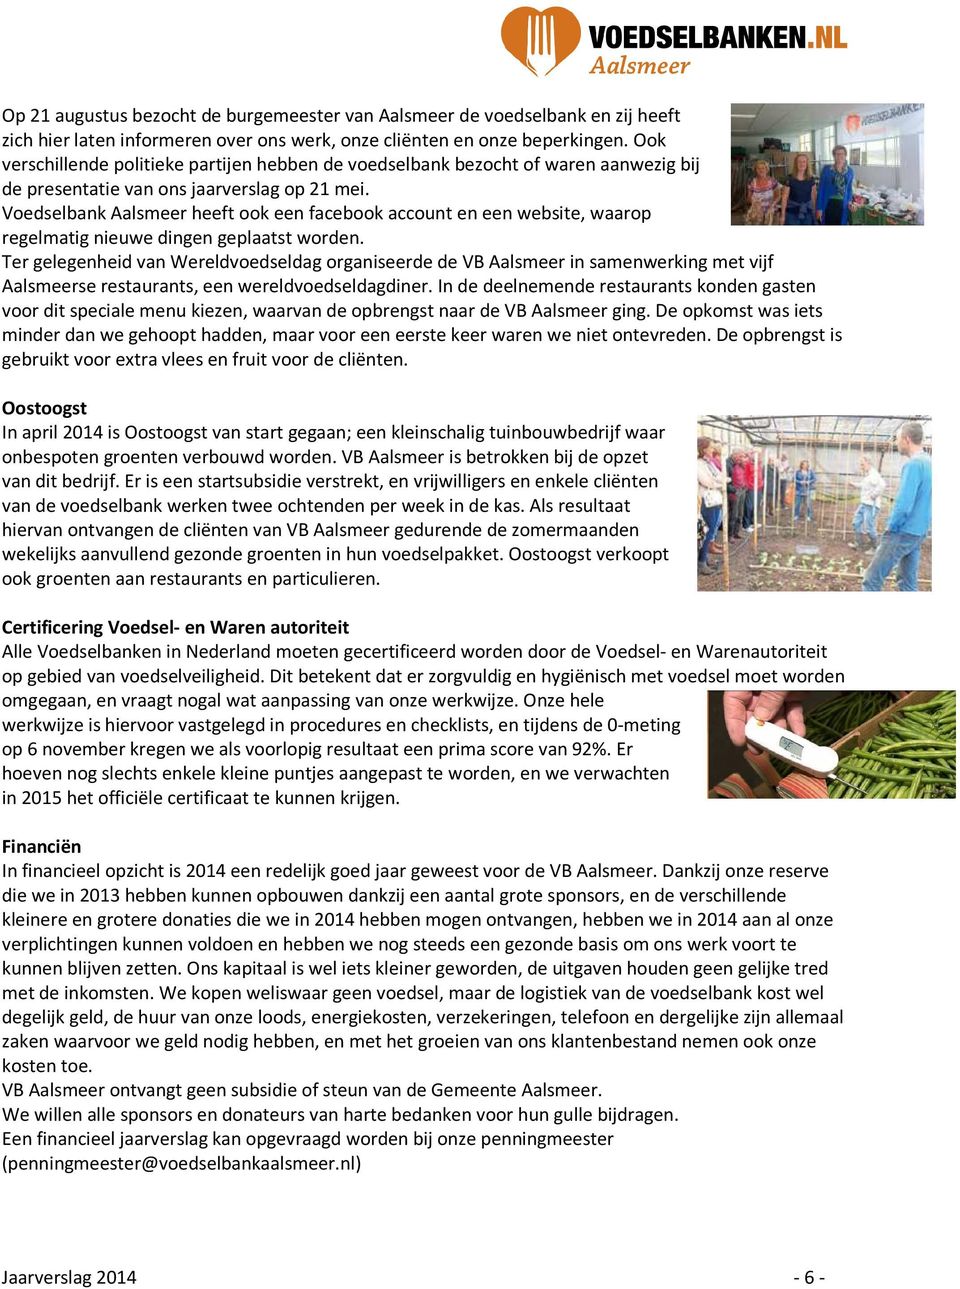 Voedselbank Aalsmeer heeft ook een facebook account en een website, waarop regelmatig nieuwe dingen geplaatst worden.